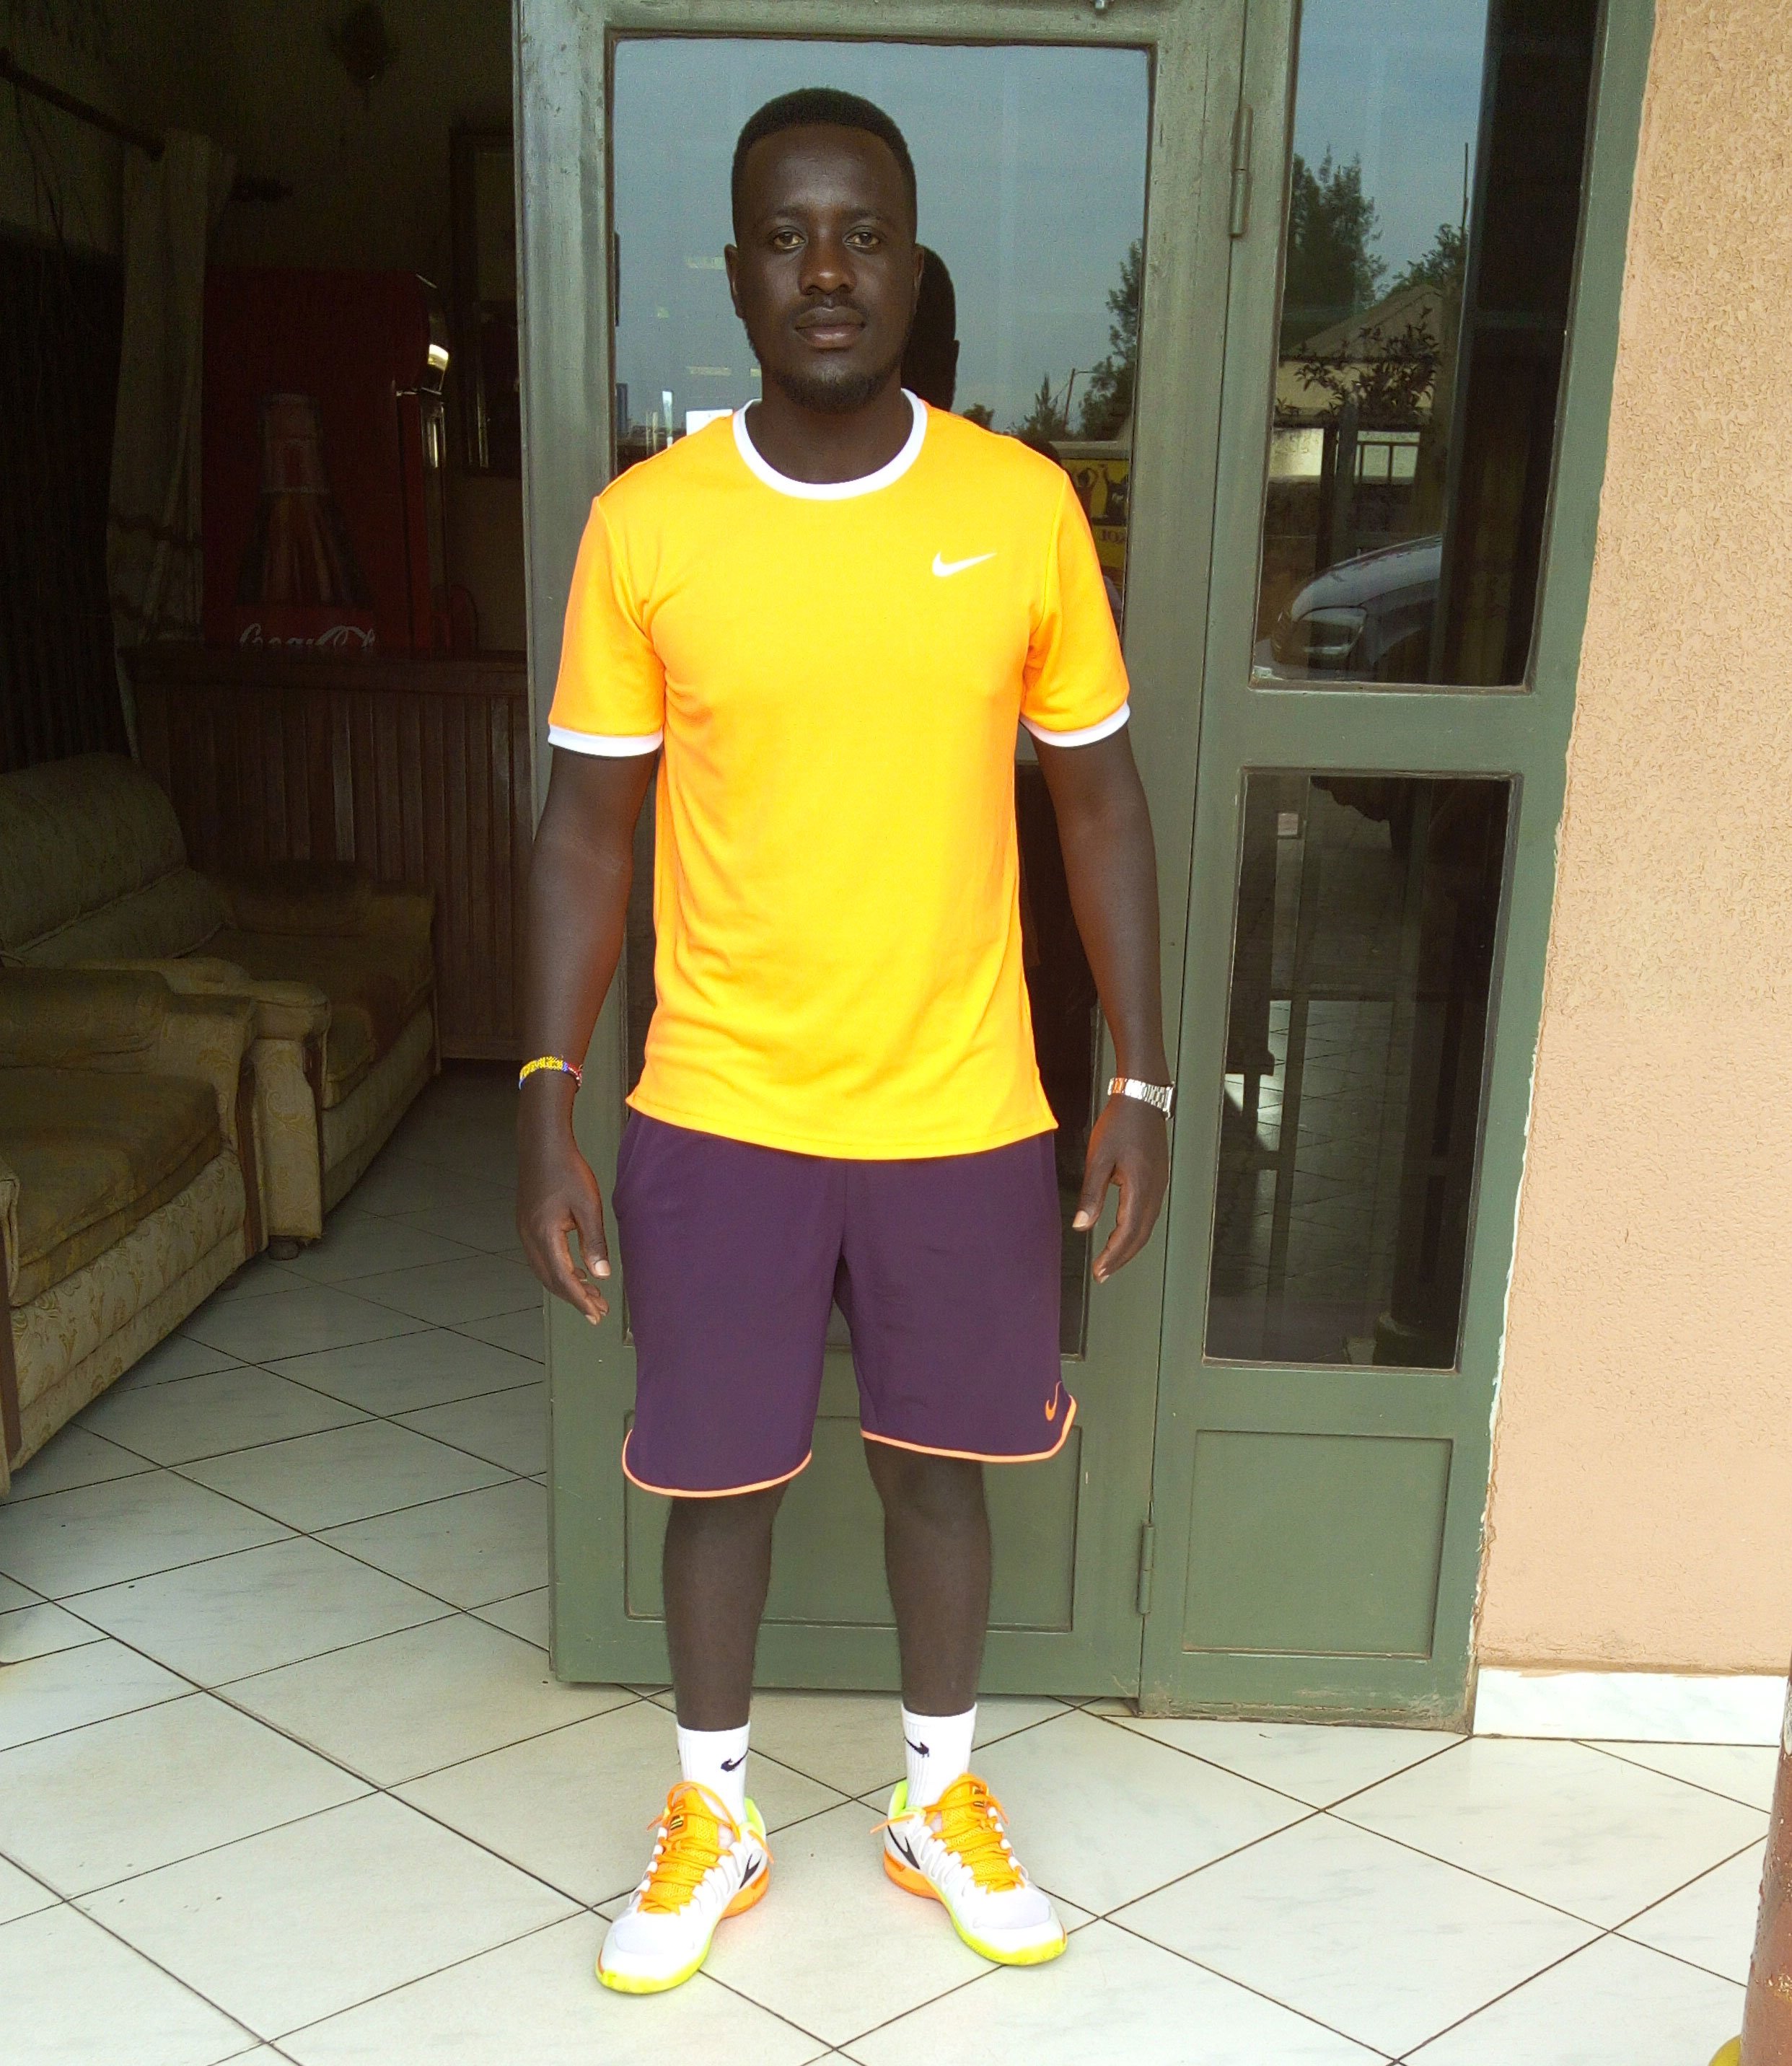 Havugimana Olivier umukinnyi wa mbere wa Tennis mu Rwanda 